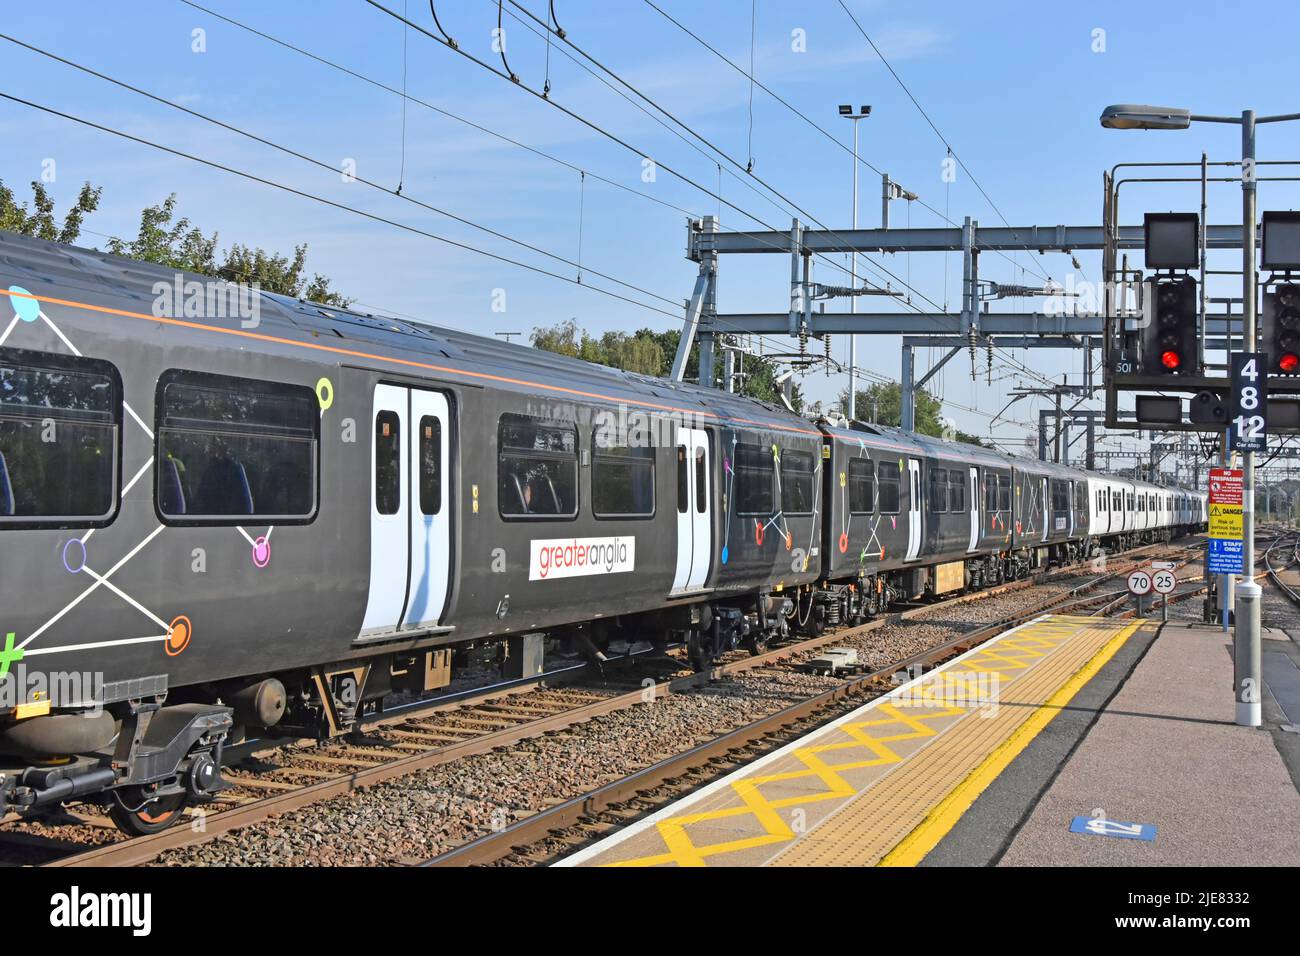 Gran Anglia coches de tren eléctrico en color gris inusual con puertas blancas y gráficos lineales extraños visto en la estación de tren de Shenfield Reino Unido Foto de stock